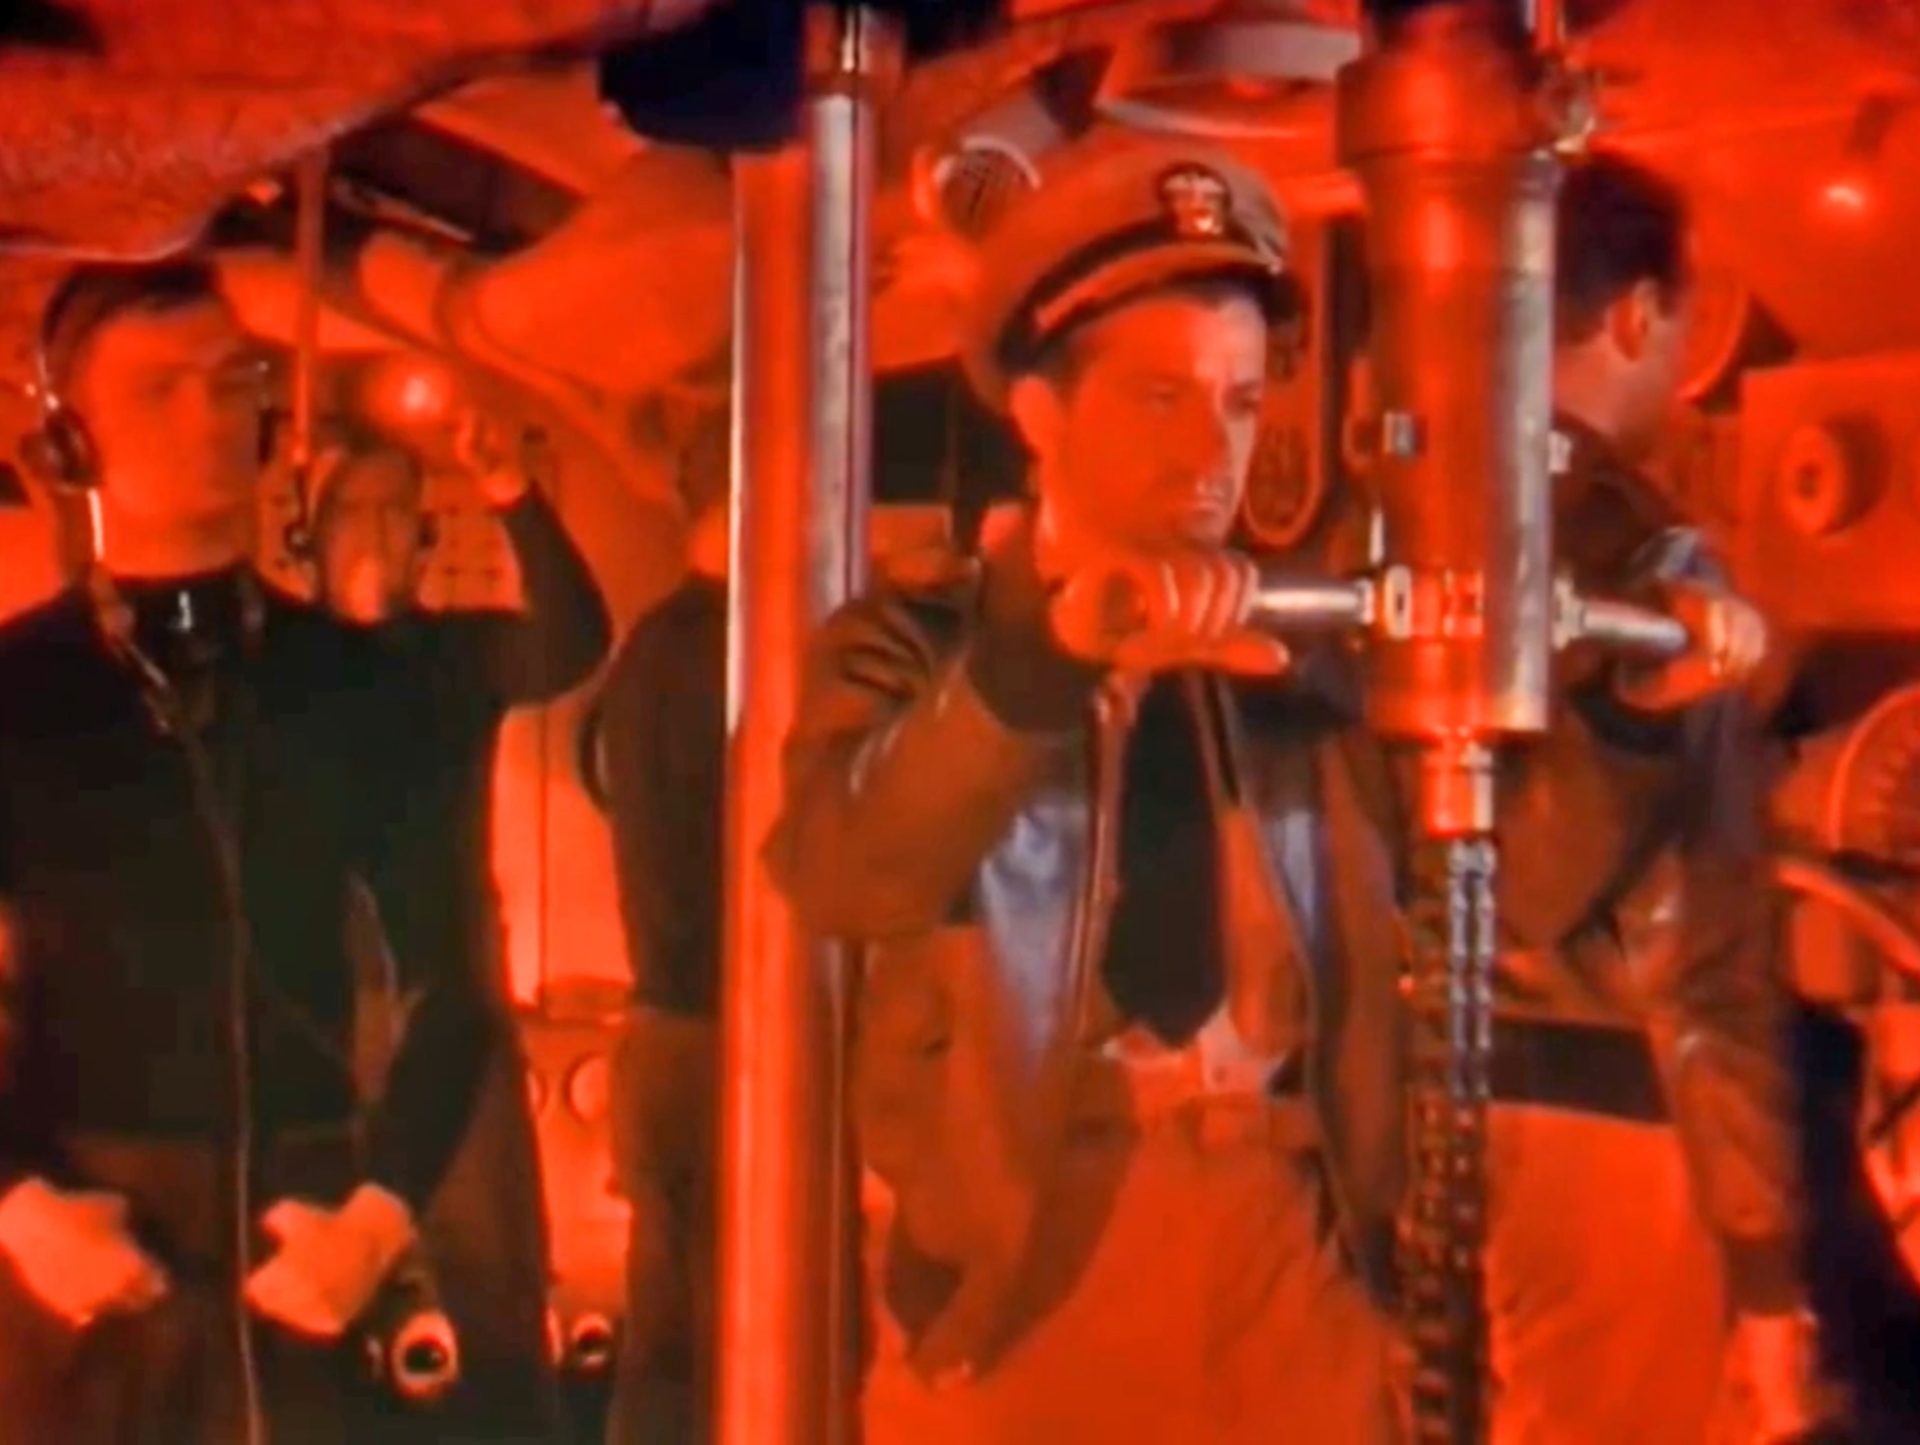 Dana Andrews als U-Boot-Kommandant beim konzentrierten Blick durch das Periskop im Rotlicht, mehrere Seeleute auf Station.